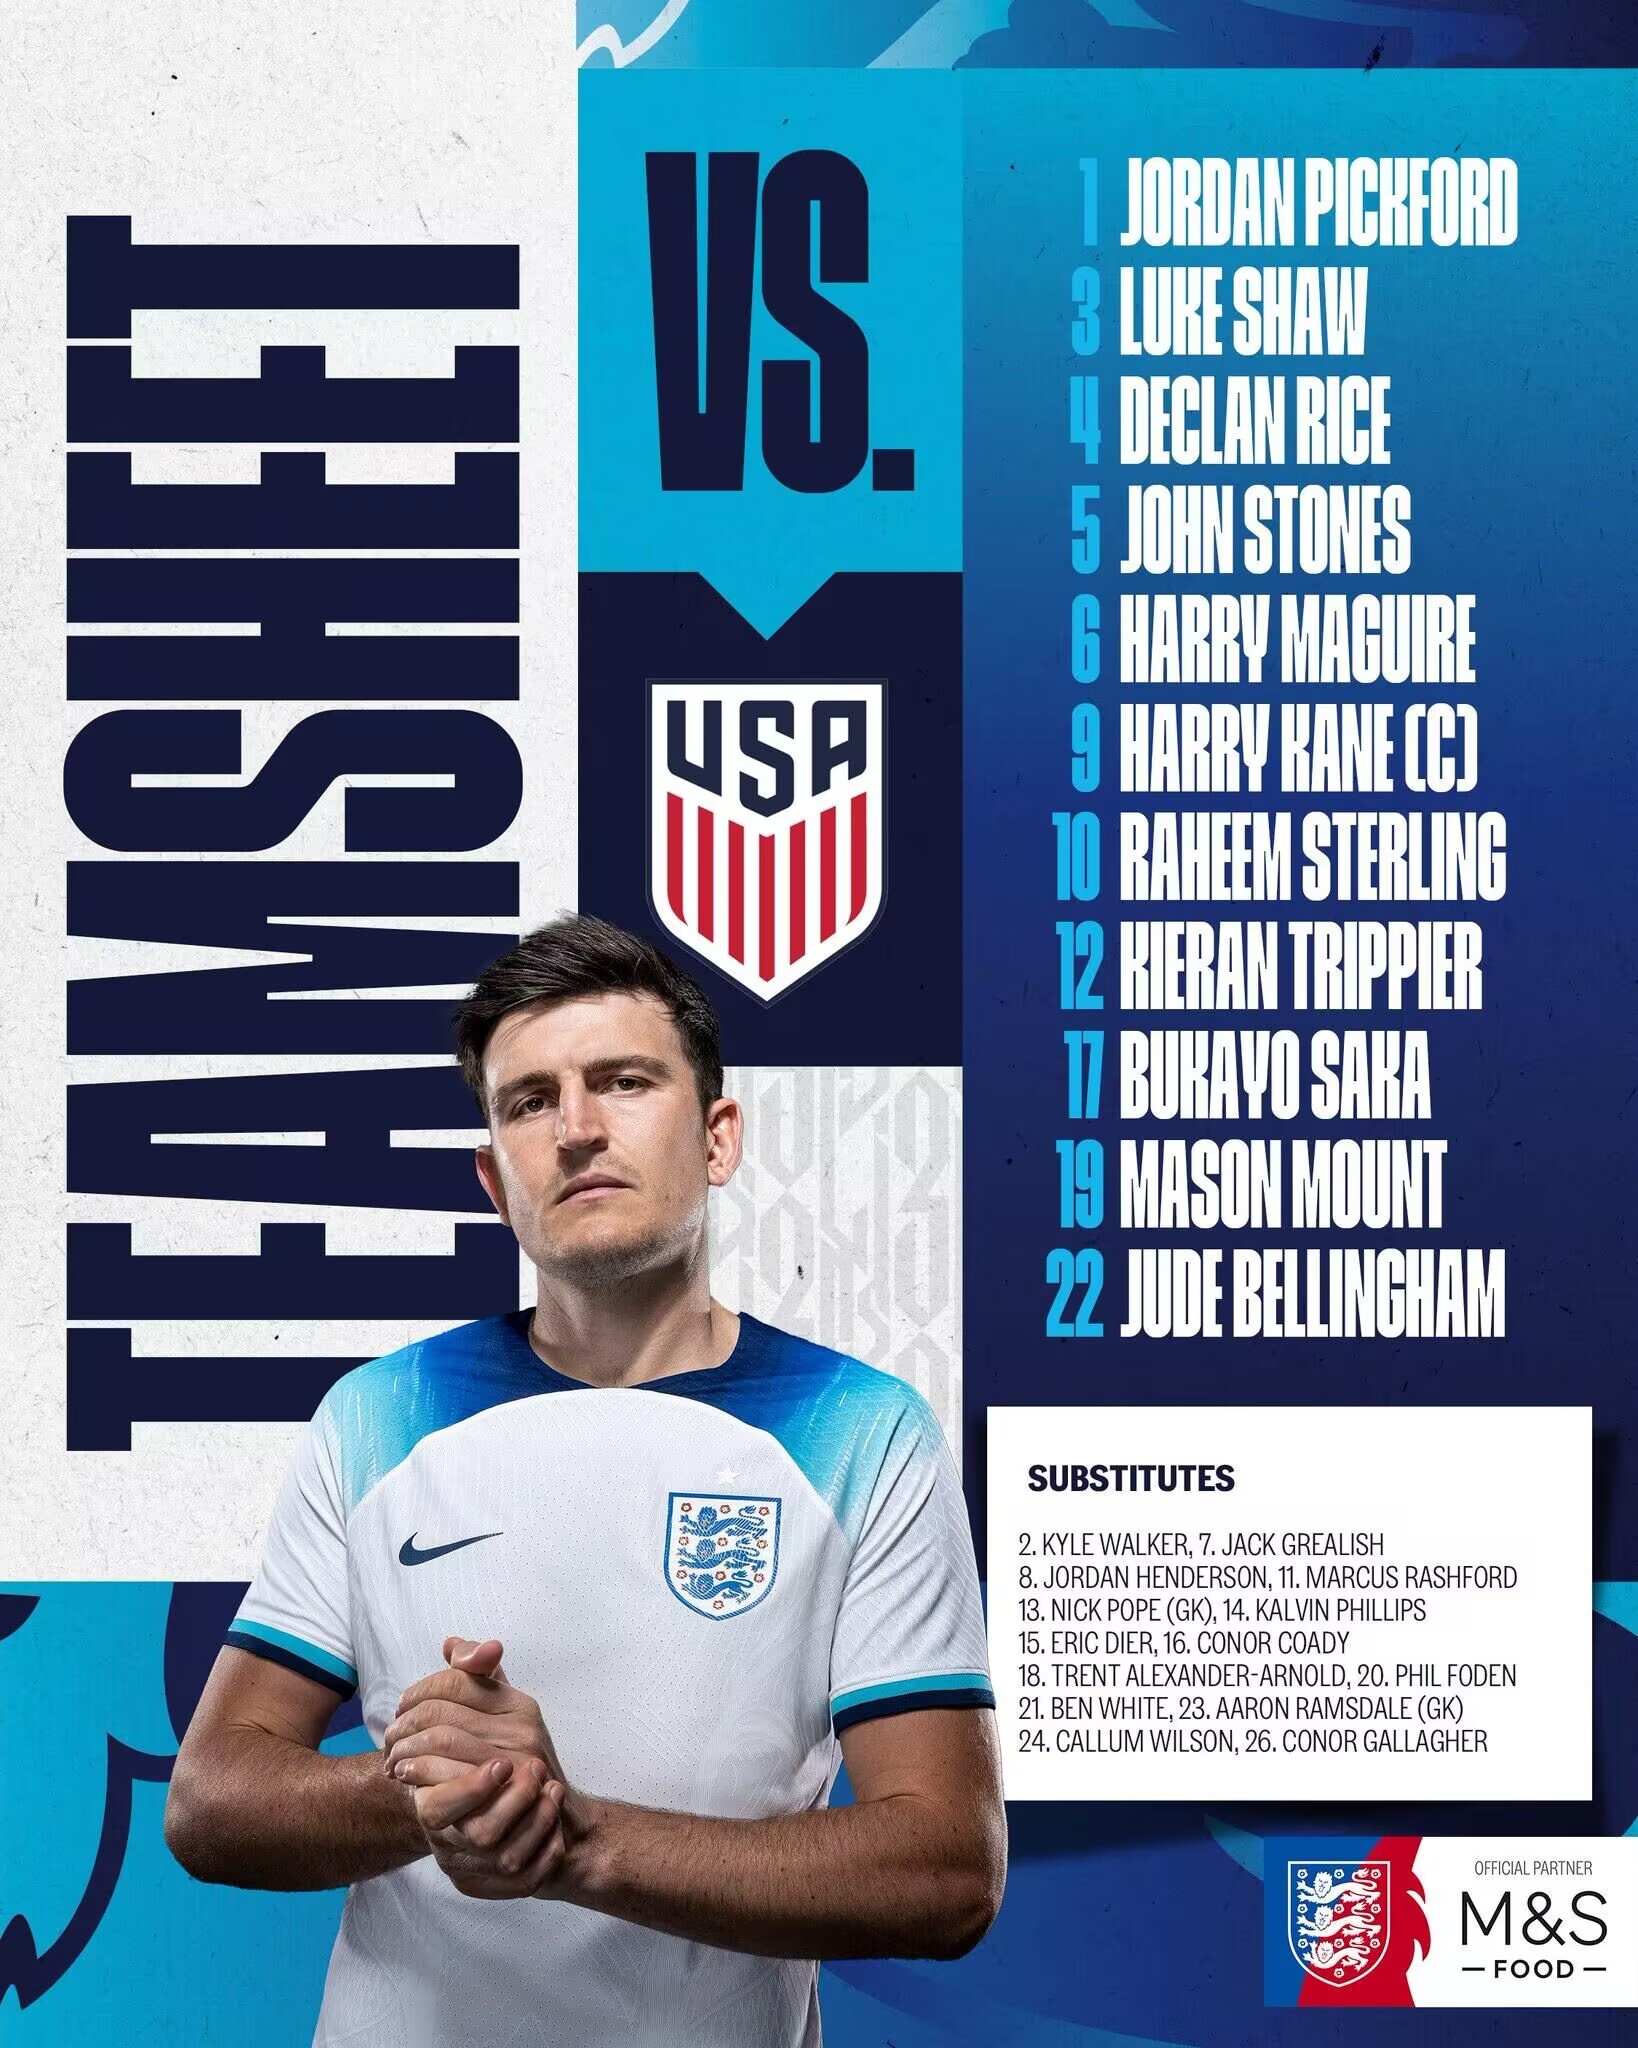 世界杯英格兰VS美国：凯恩马奎尔首发 斯特林萨卡出战